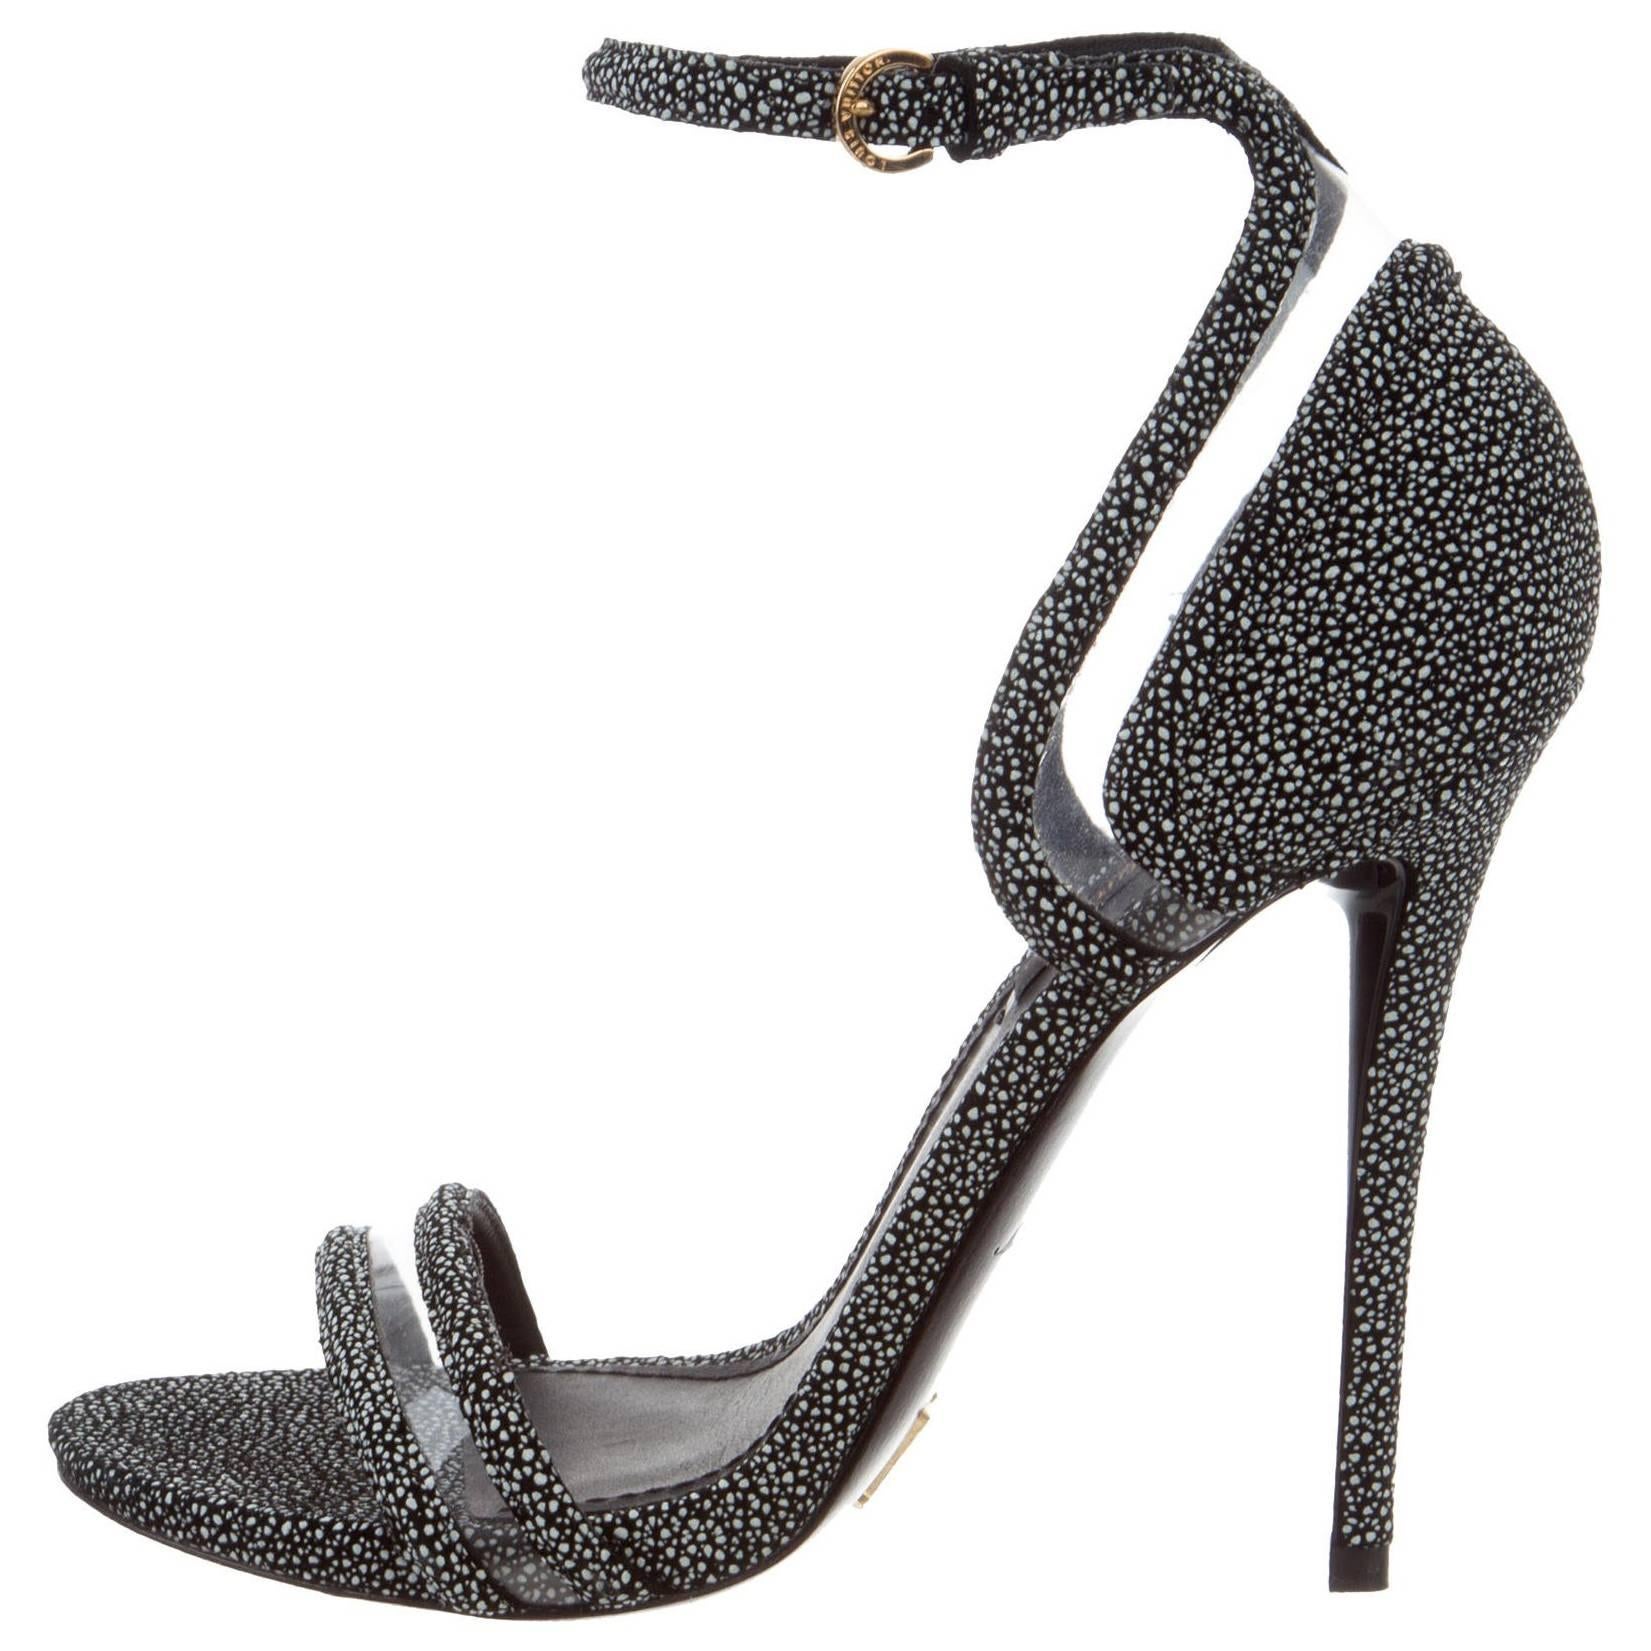 Louis Vuitton New Black Speckle Suede Cut Out Evening Sandals Heels 